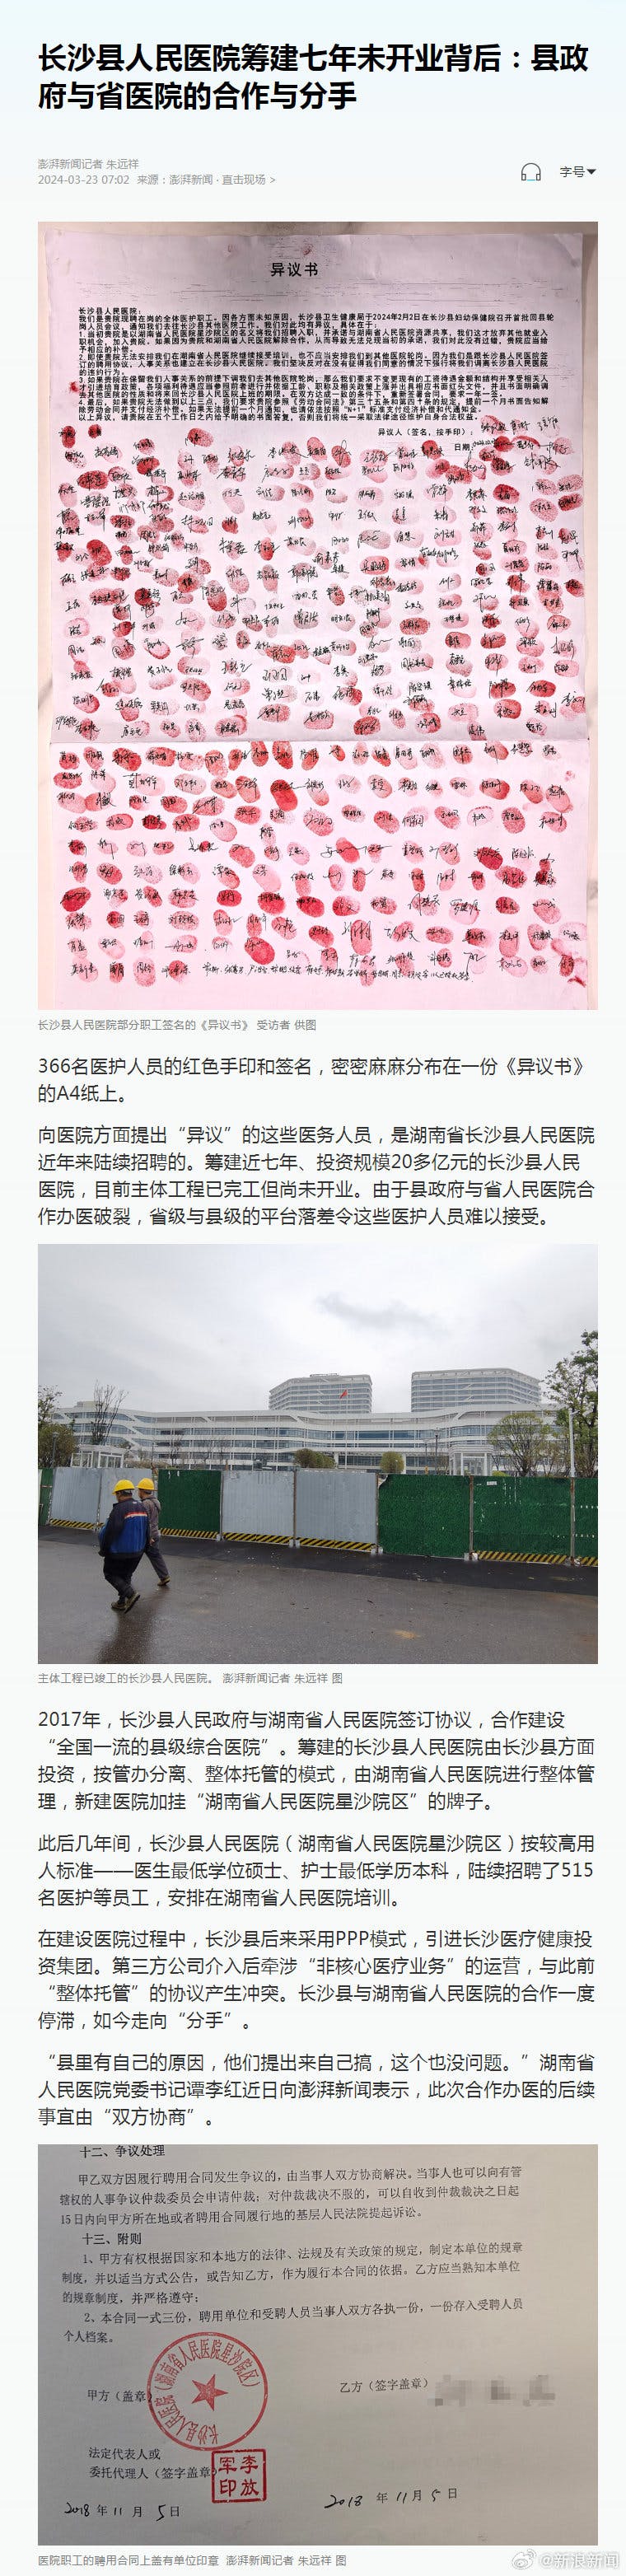 长沙县人民医院筹建7年未开业